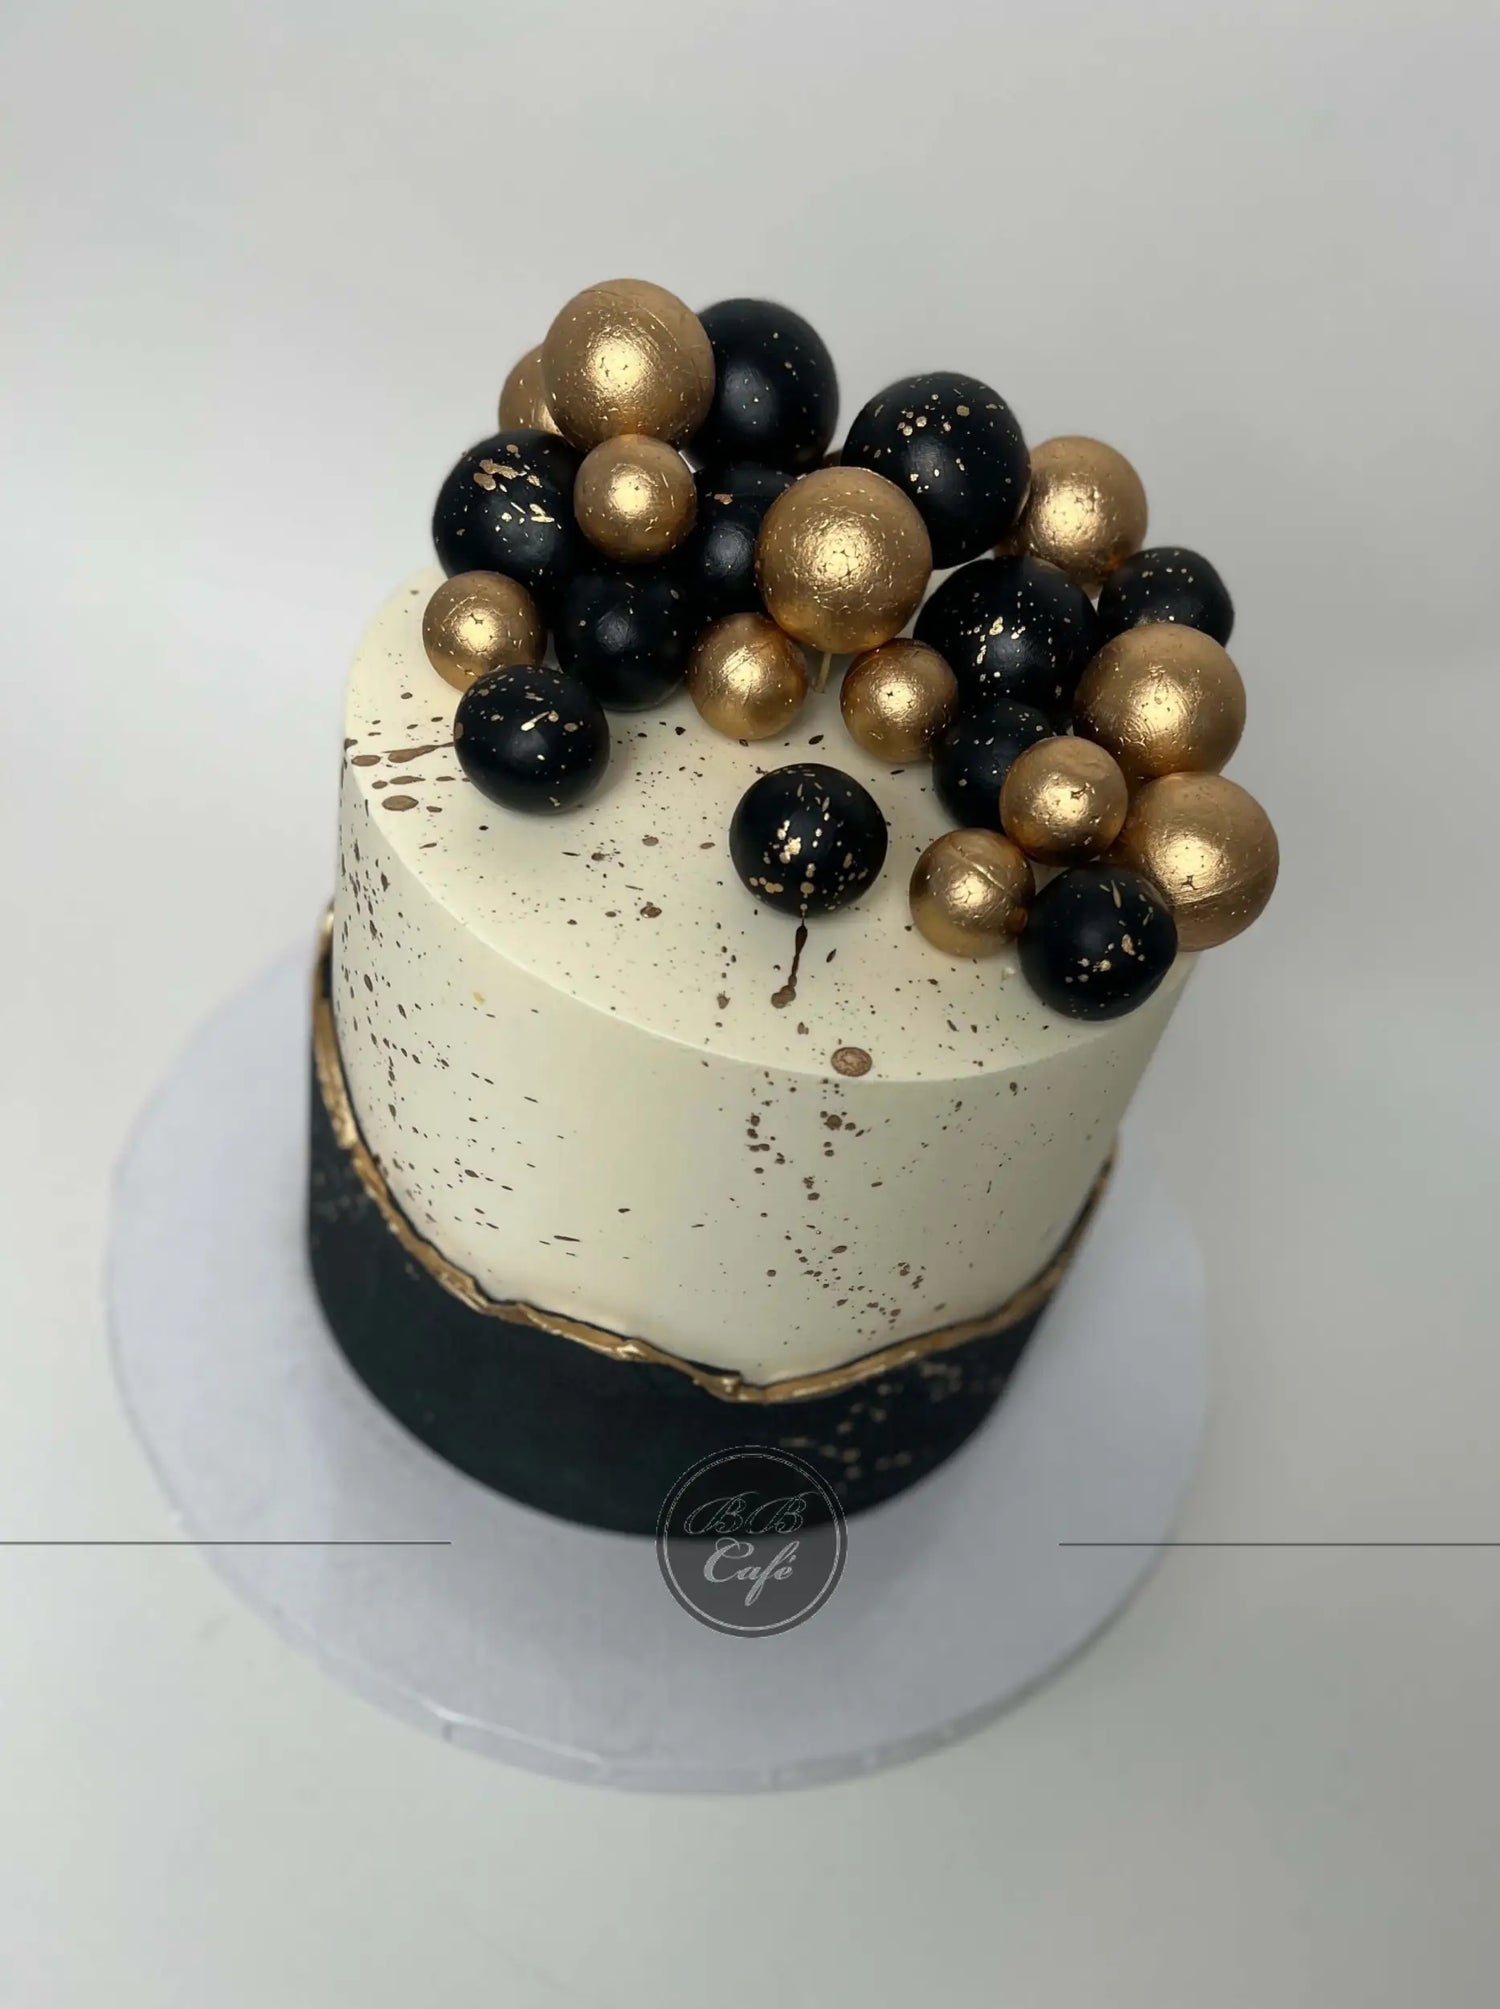 Layered spheres on buttercream - custom cake